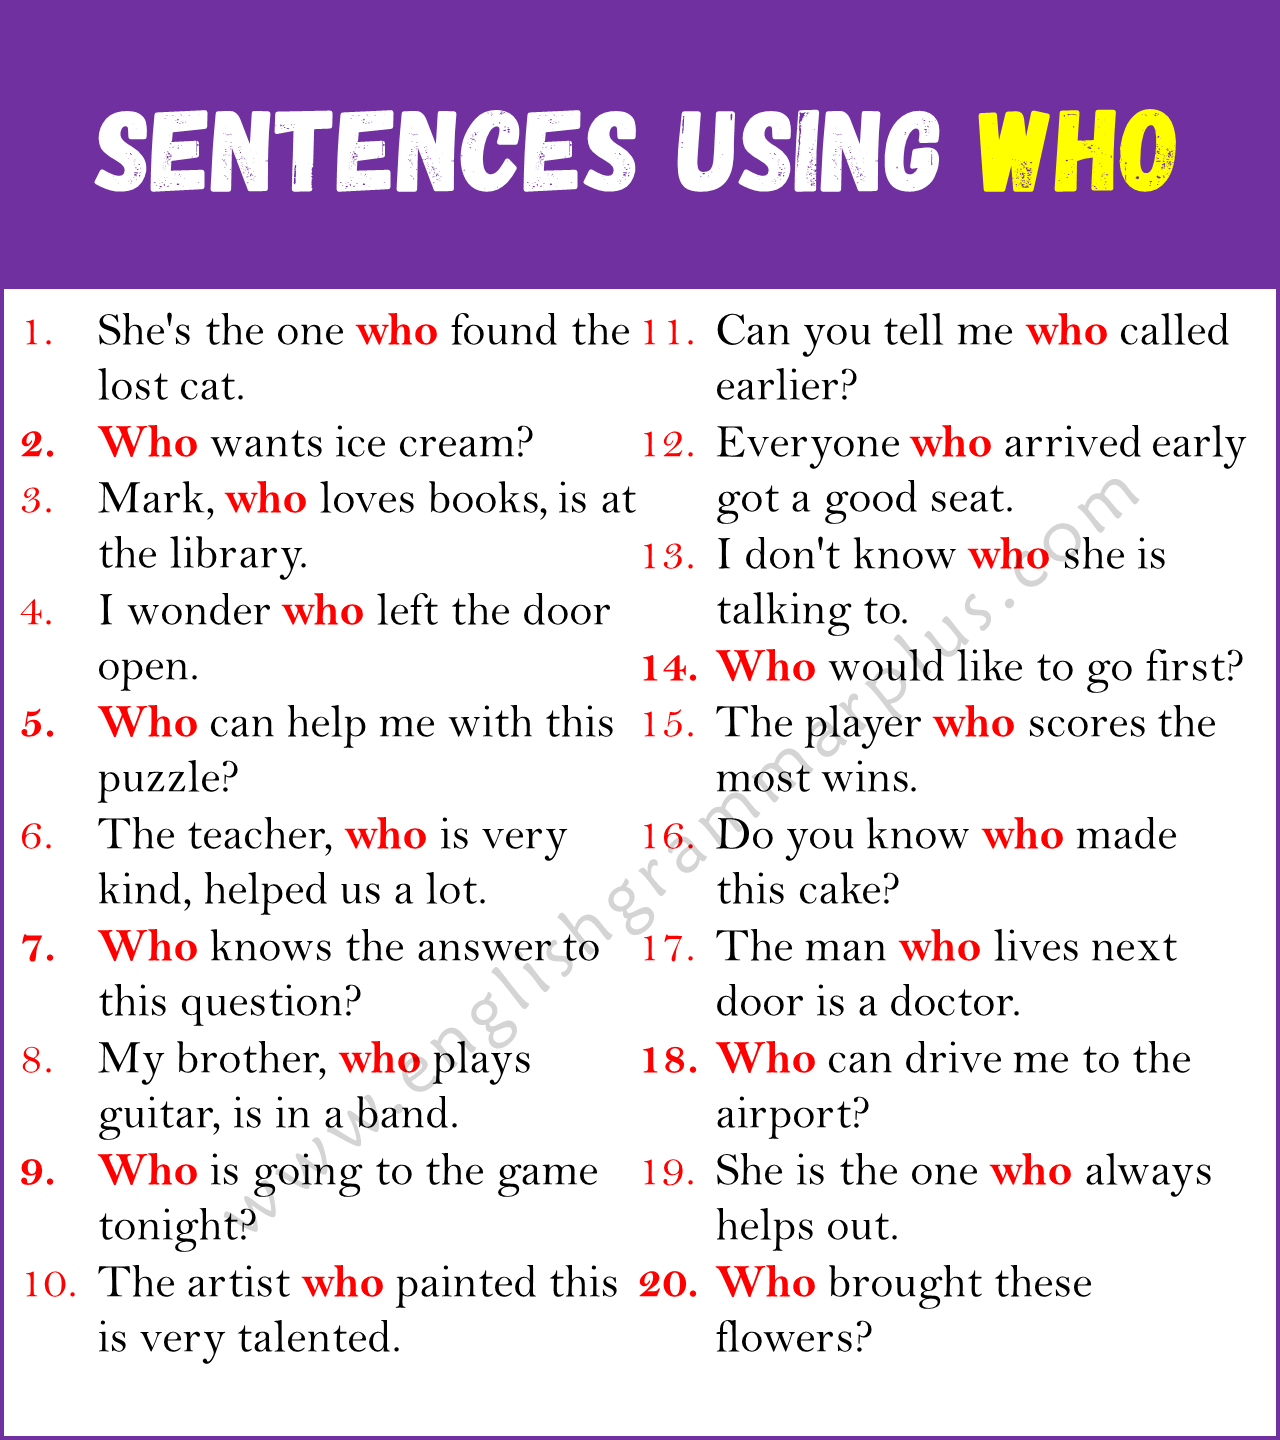 Sentences Using WHO